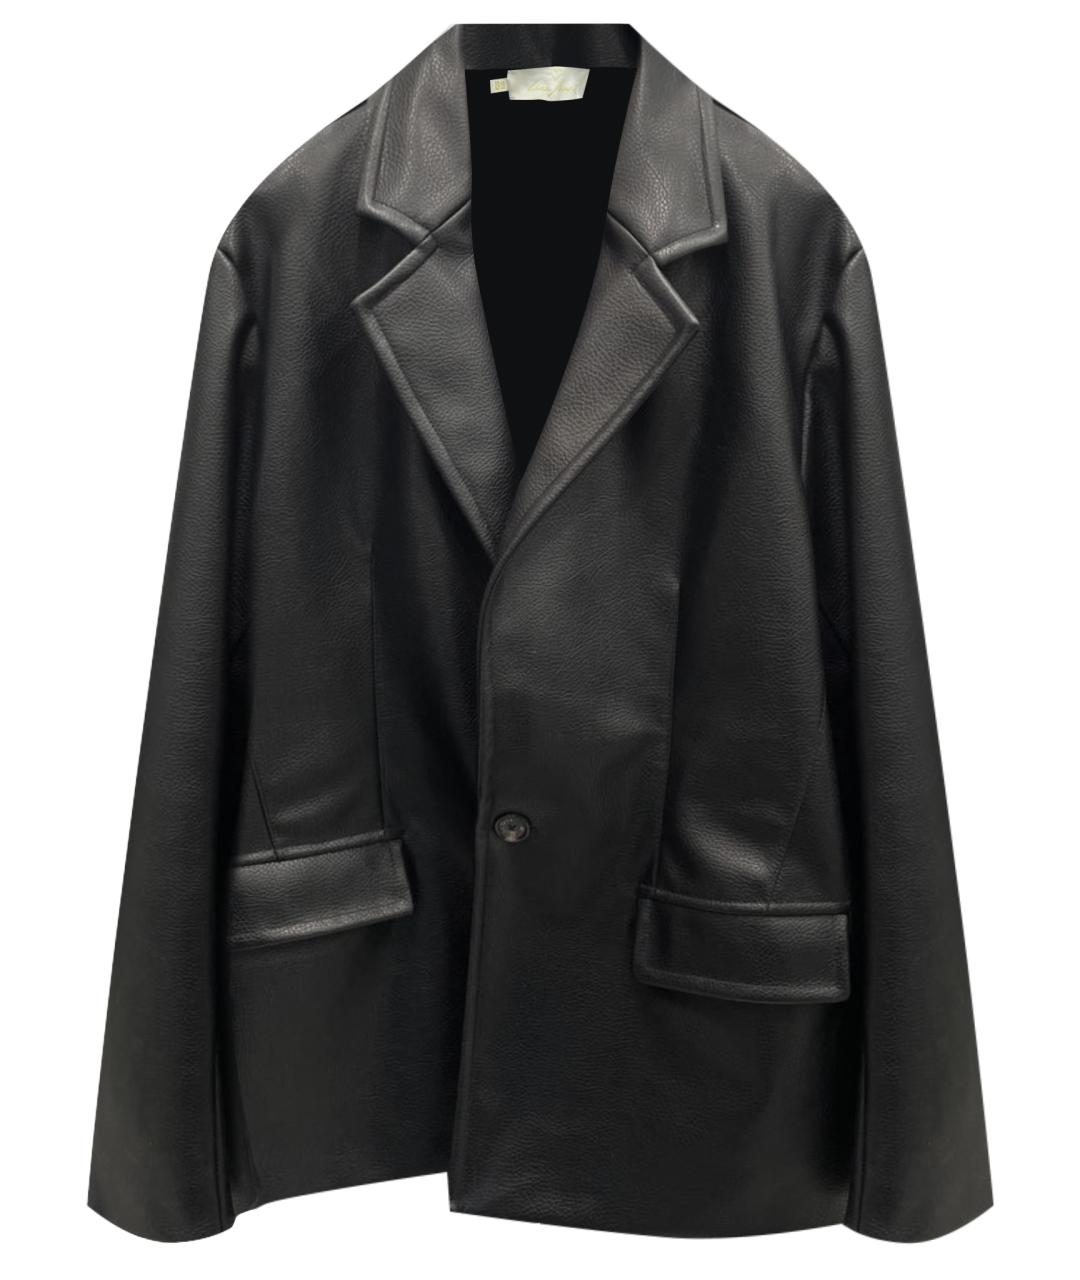 YANA DRESS Черный кожаный жакет/пиджак, фото 1